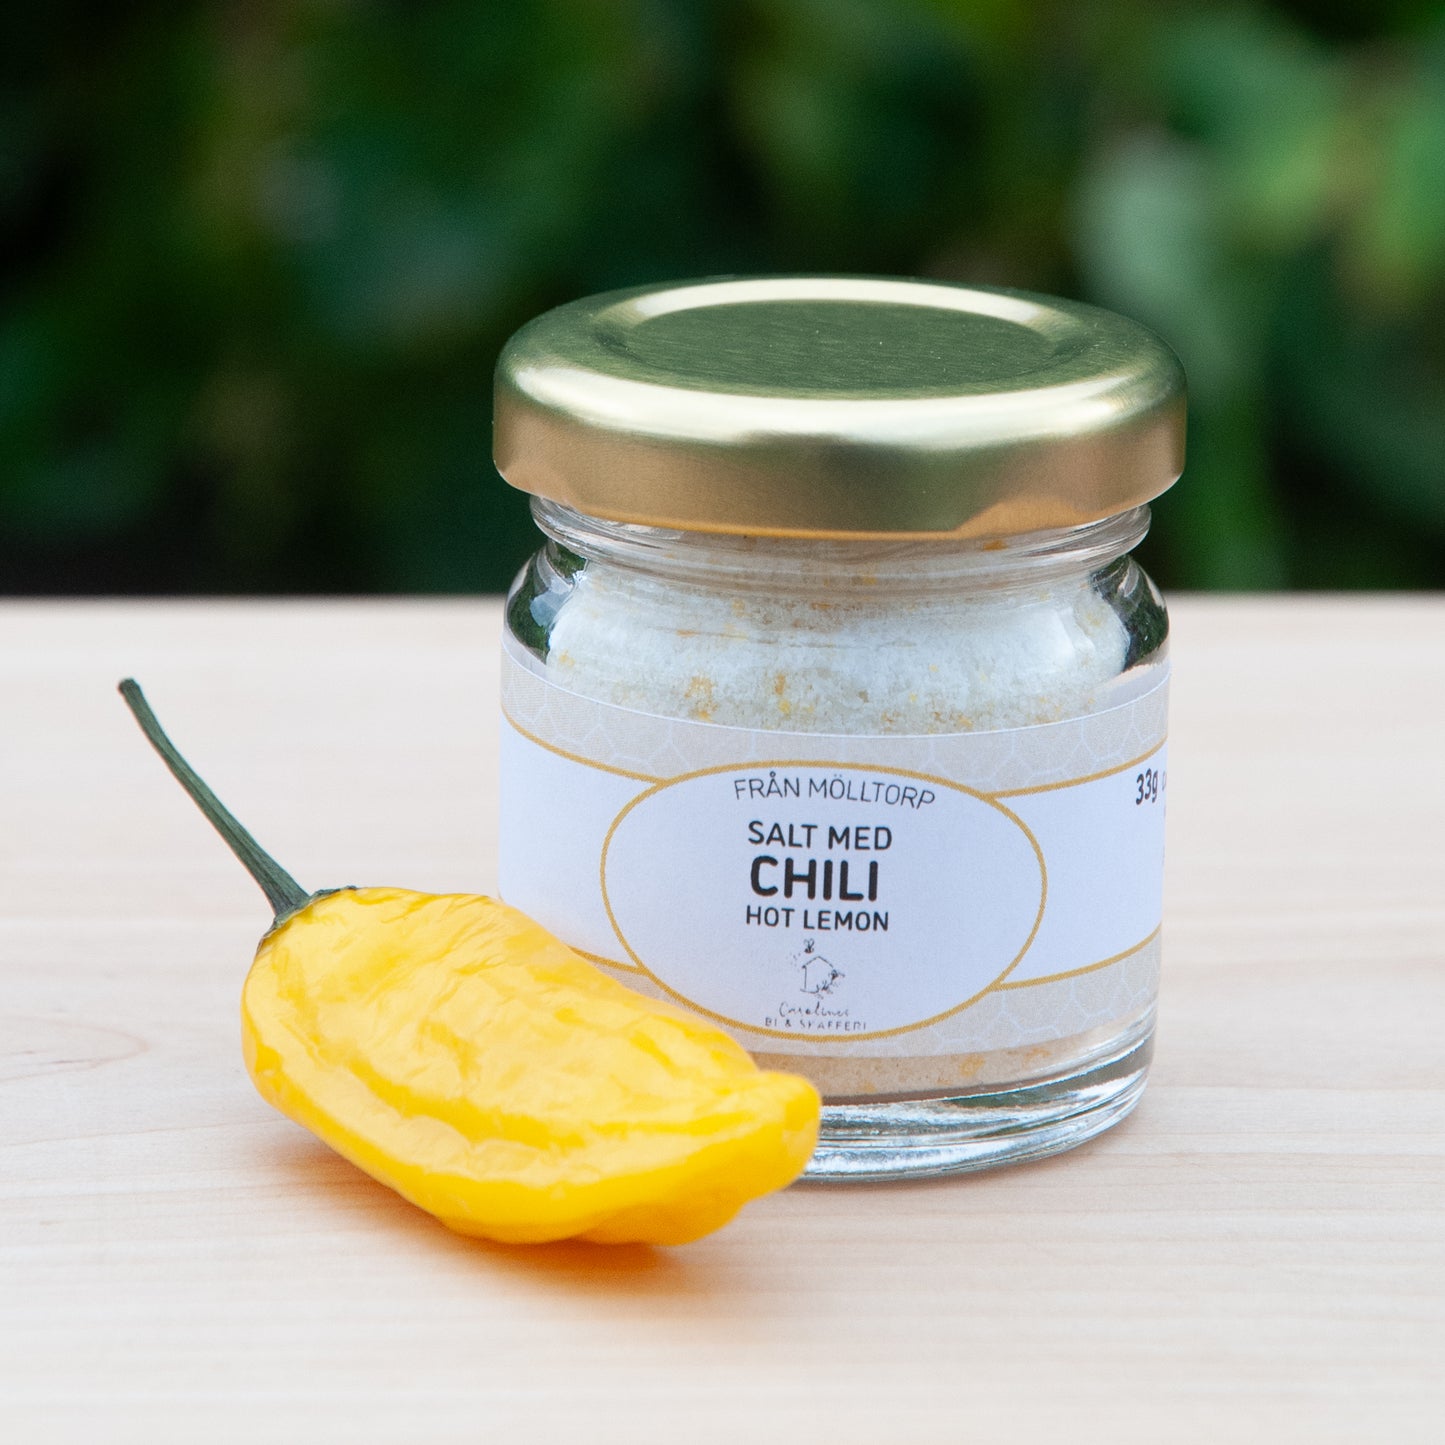 Salt med Chili - Hot Lemon, 33g